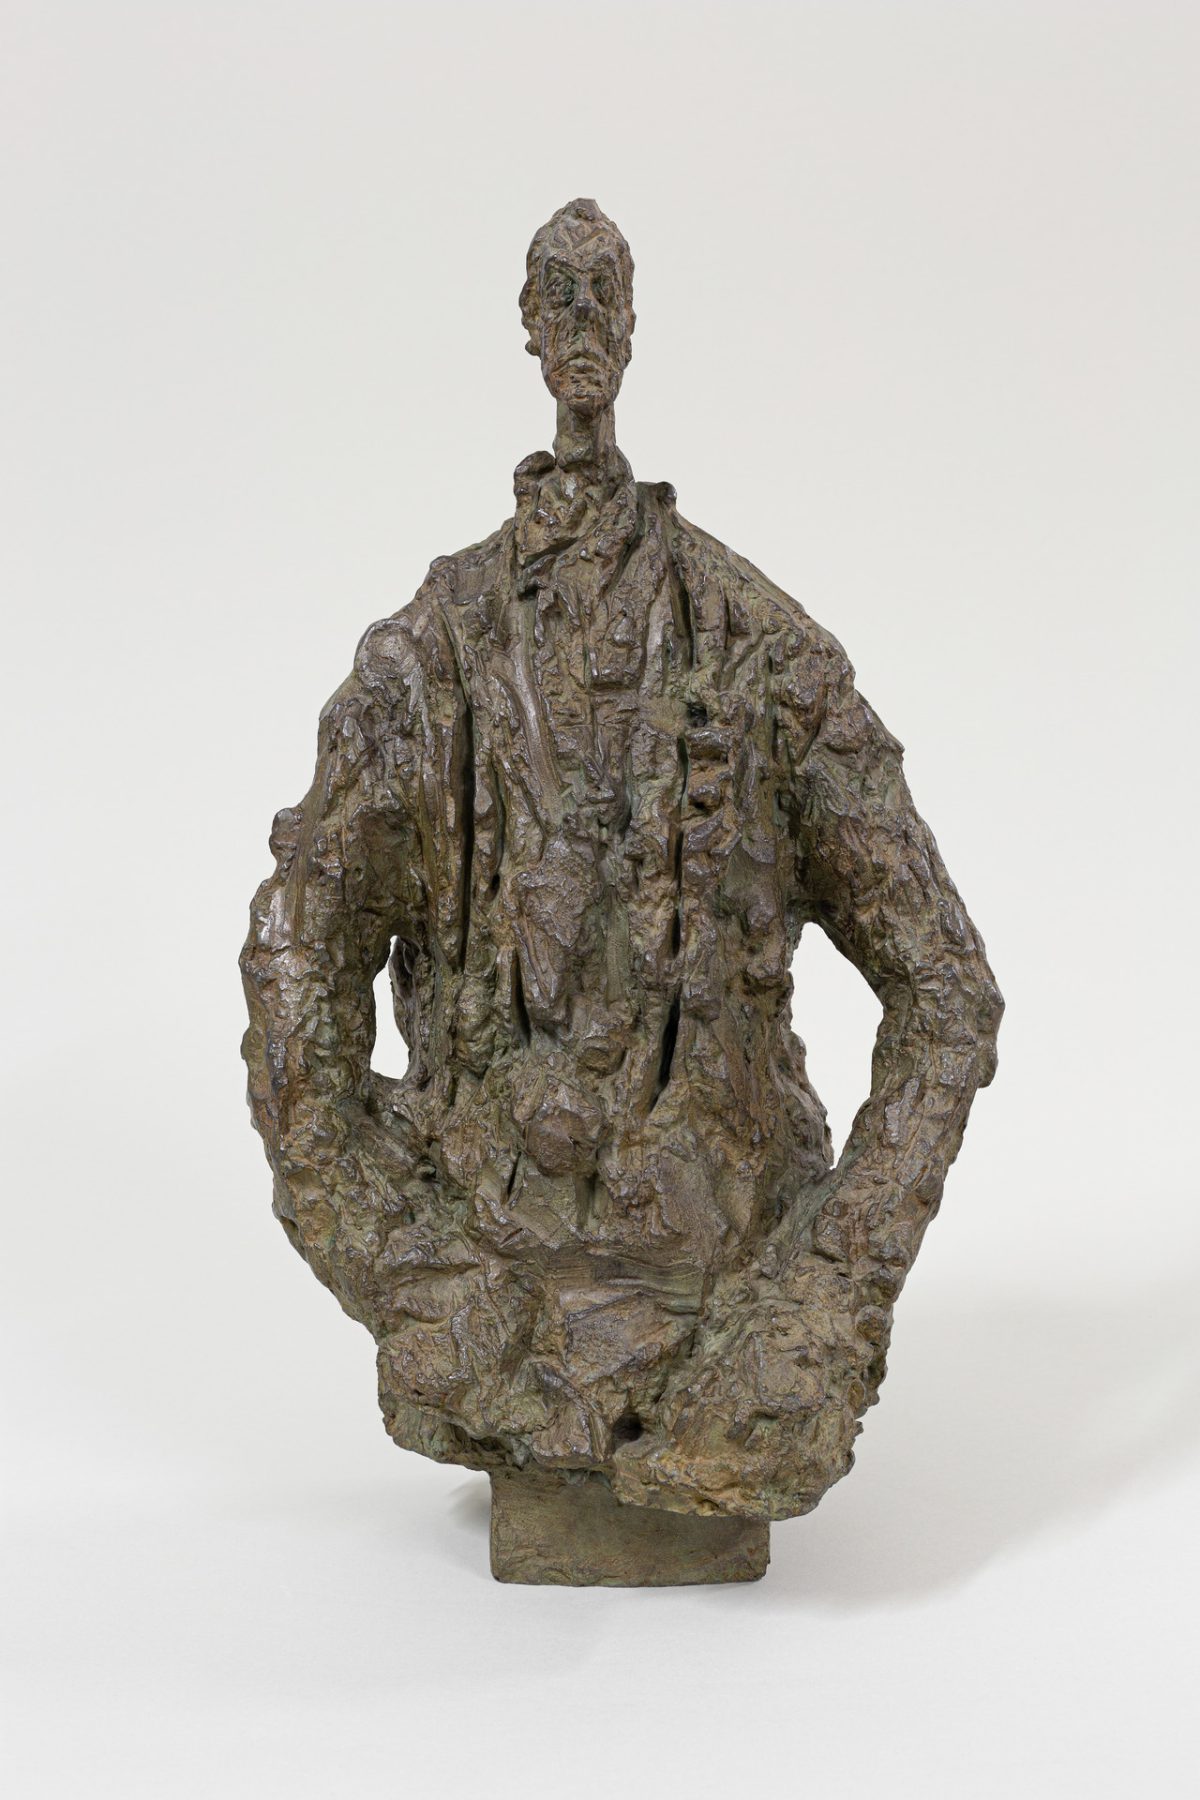 Alberto Giacometti: Man with a Windbreaker